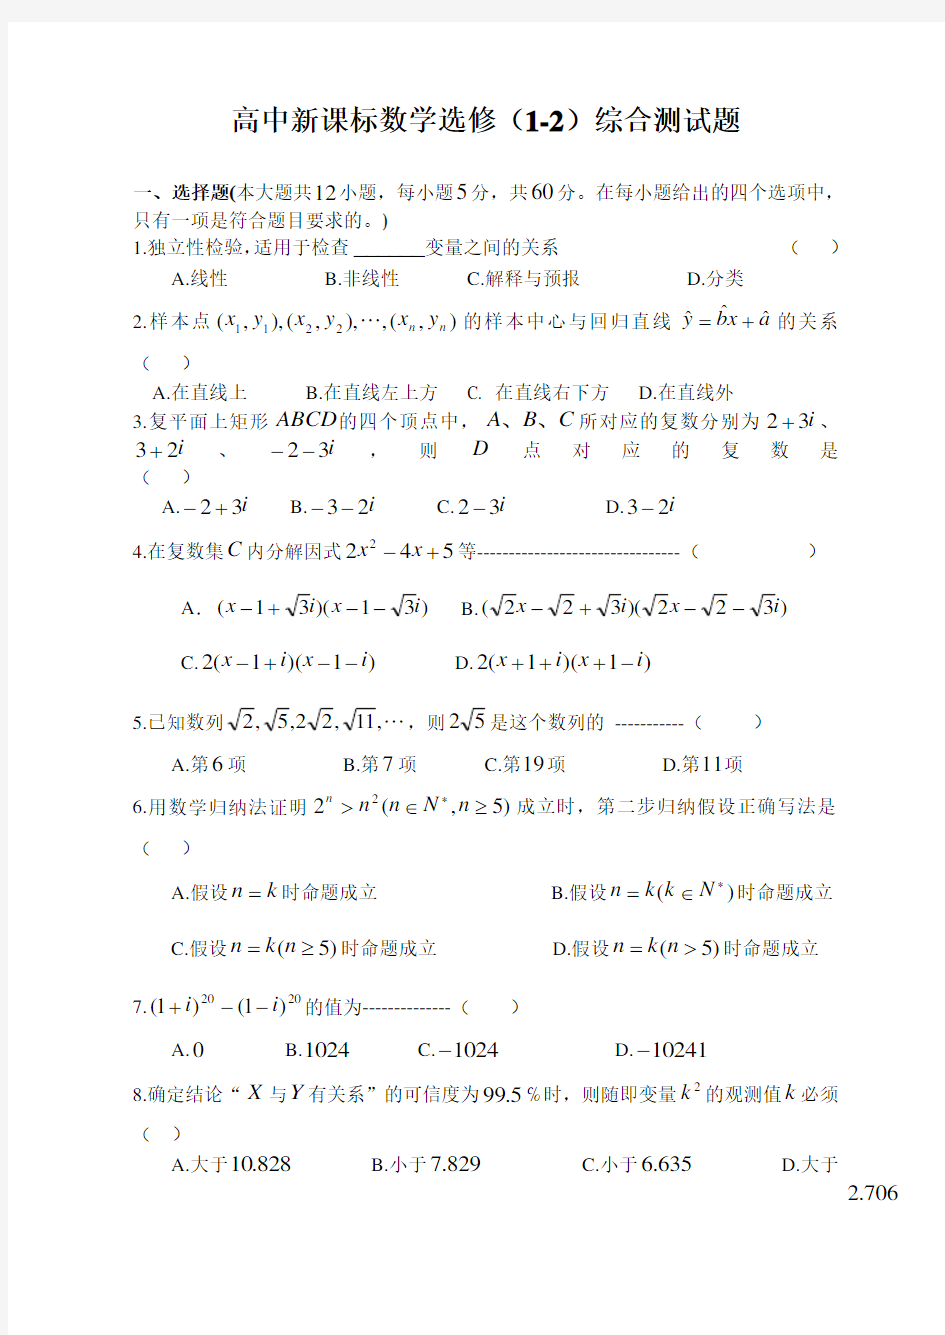 高中数学选修1-2综合测试题(附答案) (1)